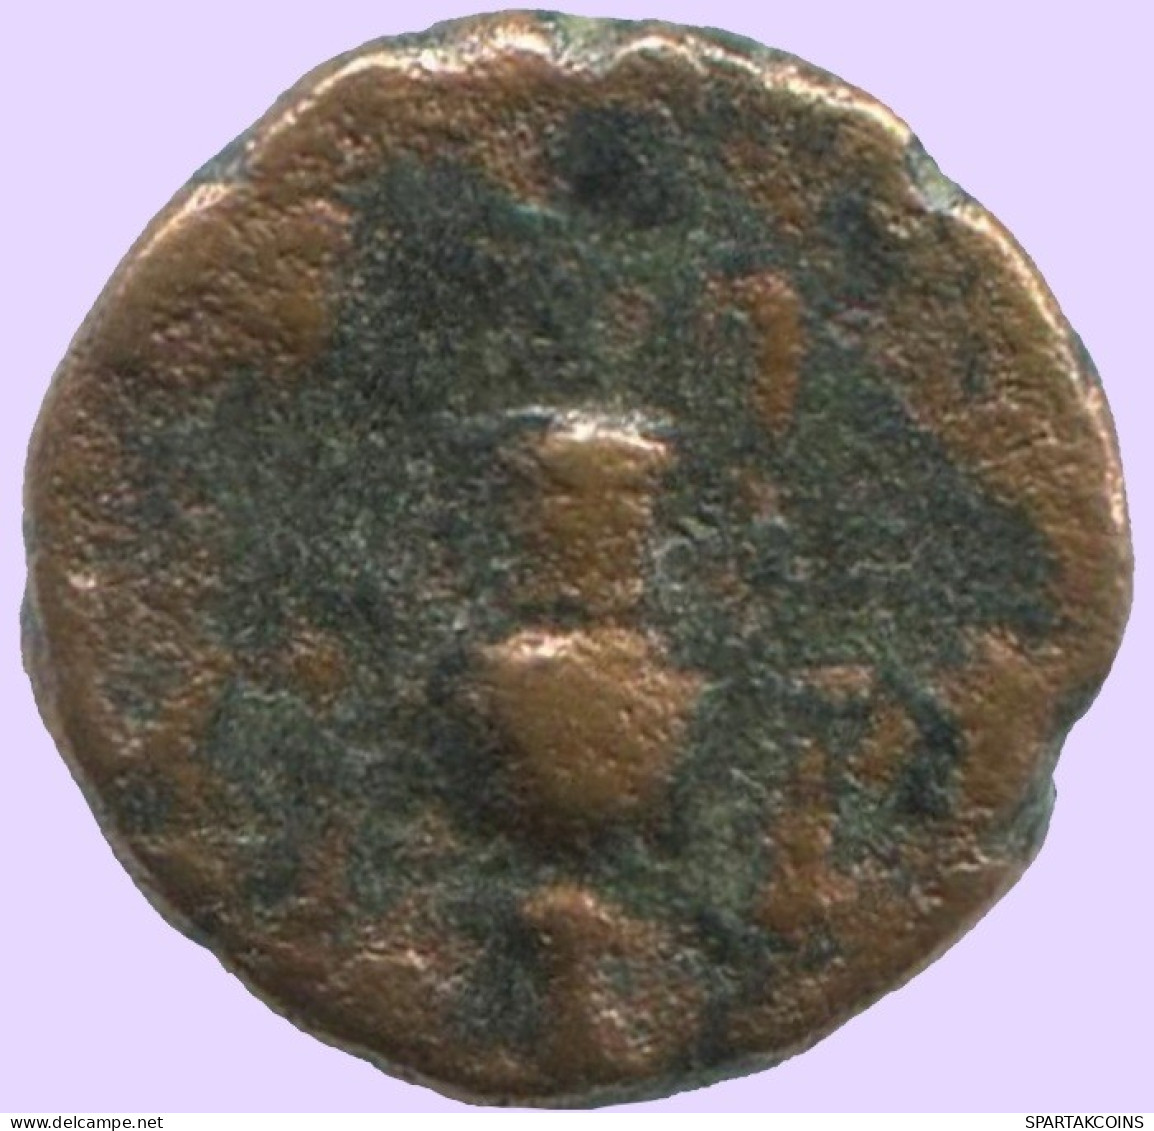 Ancient Authentic Original GREEK Coin 0.6g/8mm #ANT1714.10.U.A - Griechische Münzen